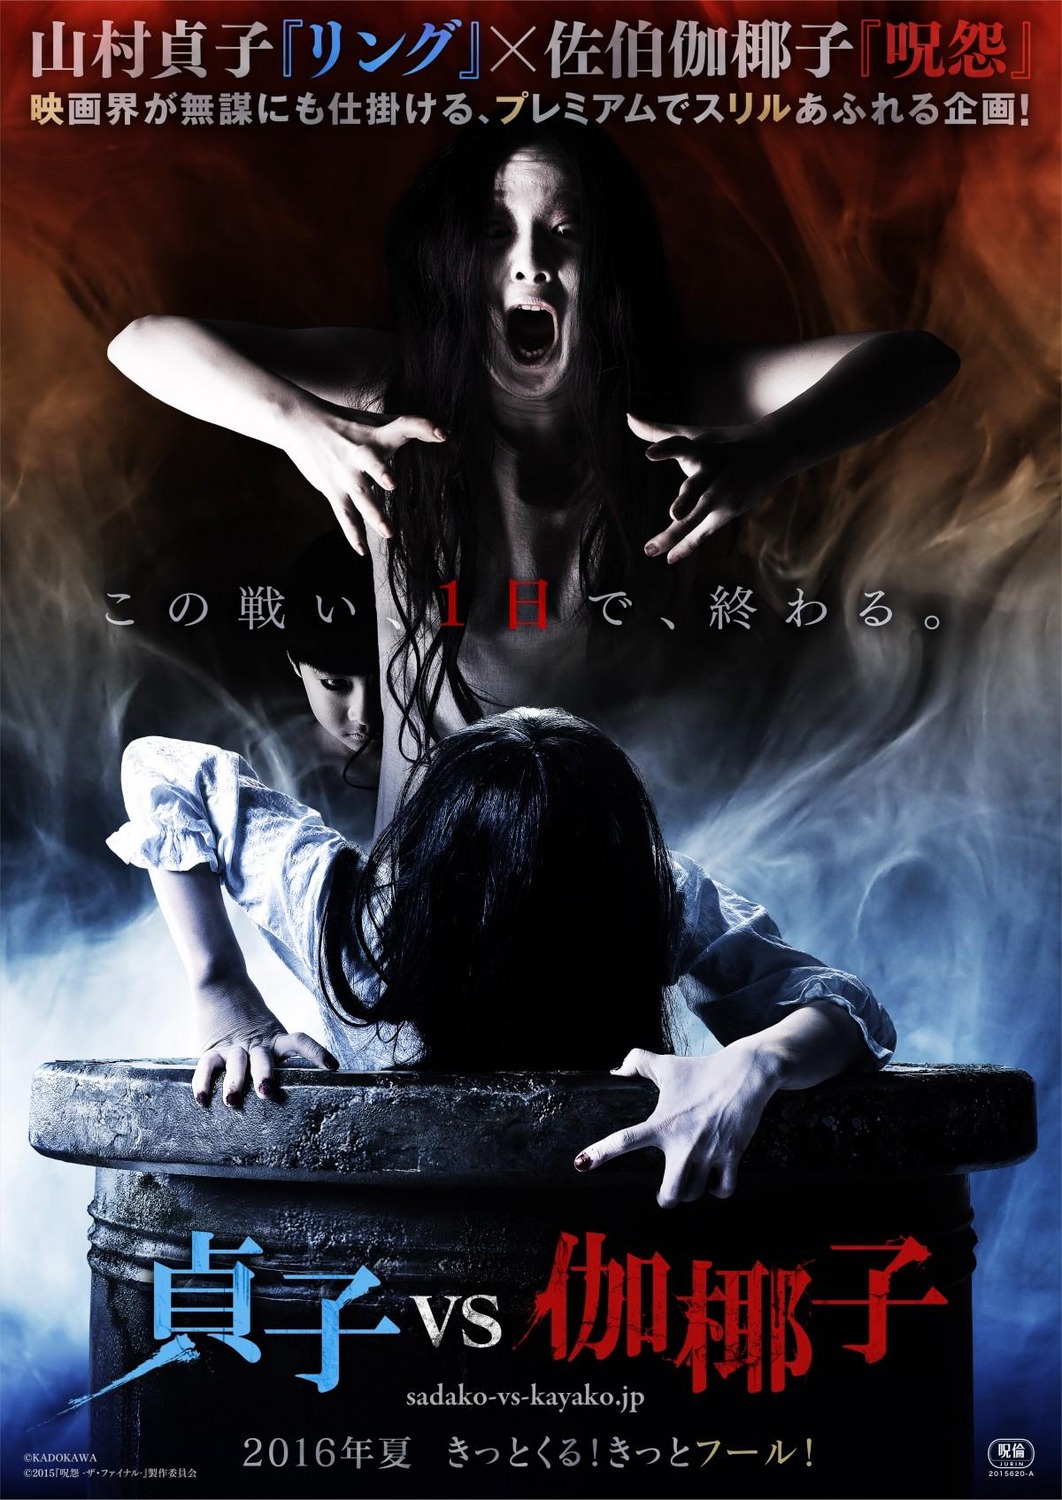 Extra Large Movie Poster Image for Sadako vs. Kayako 